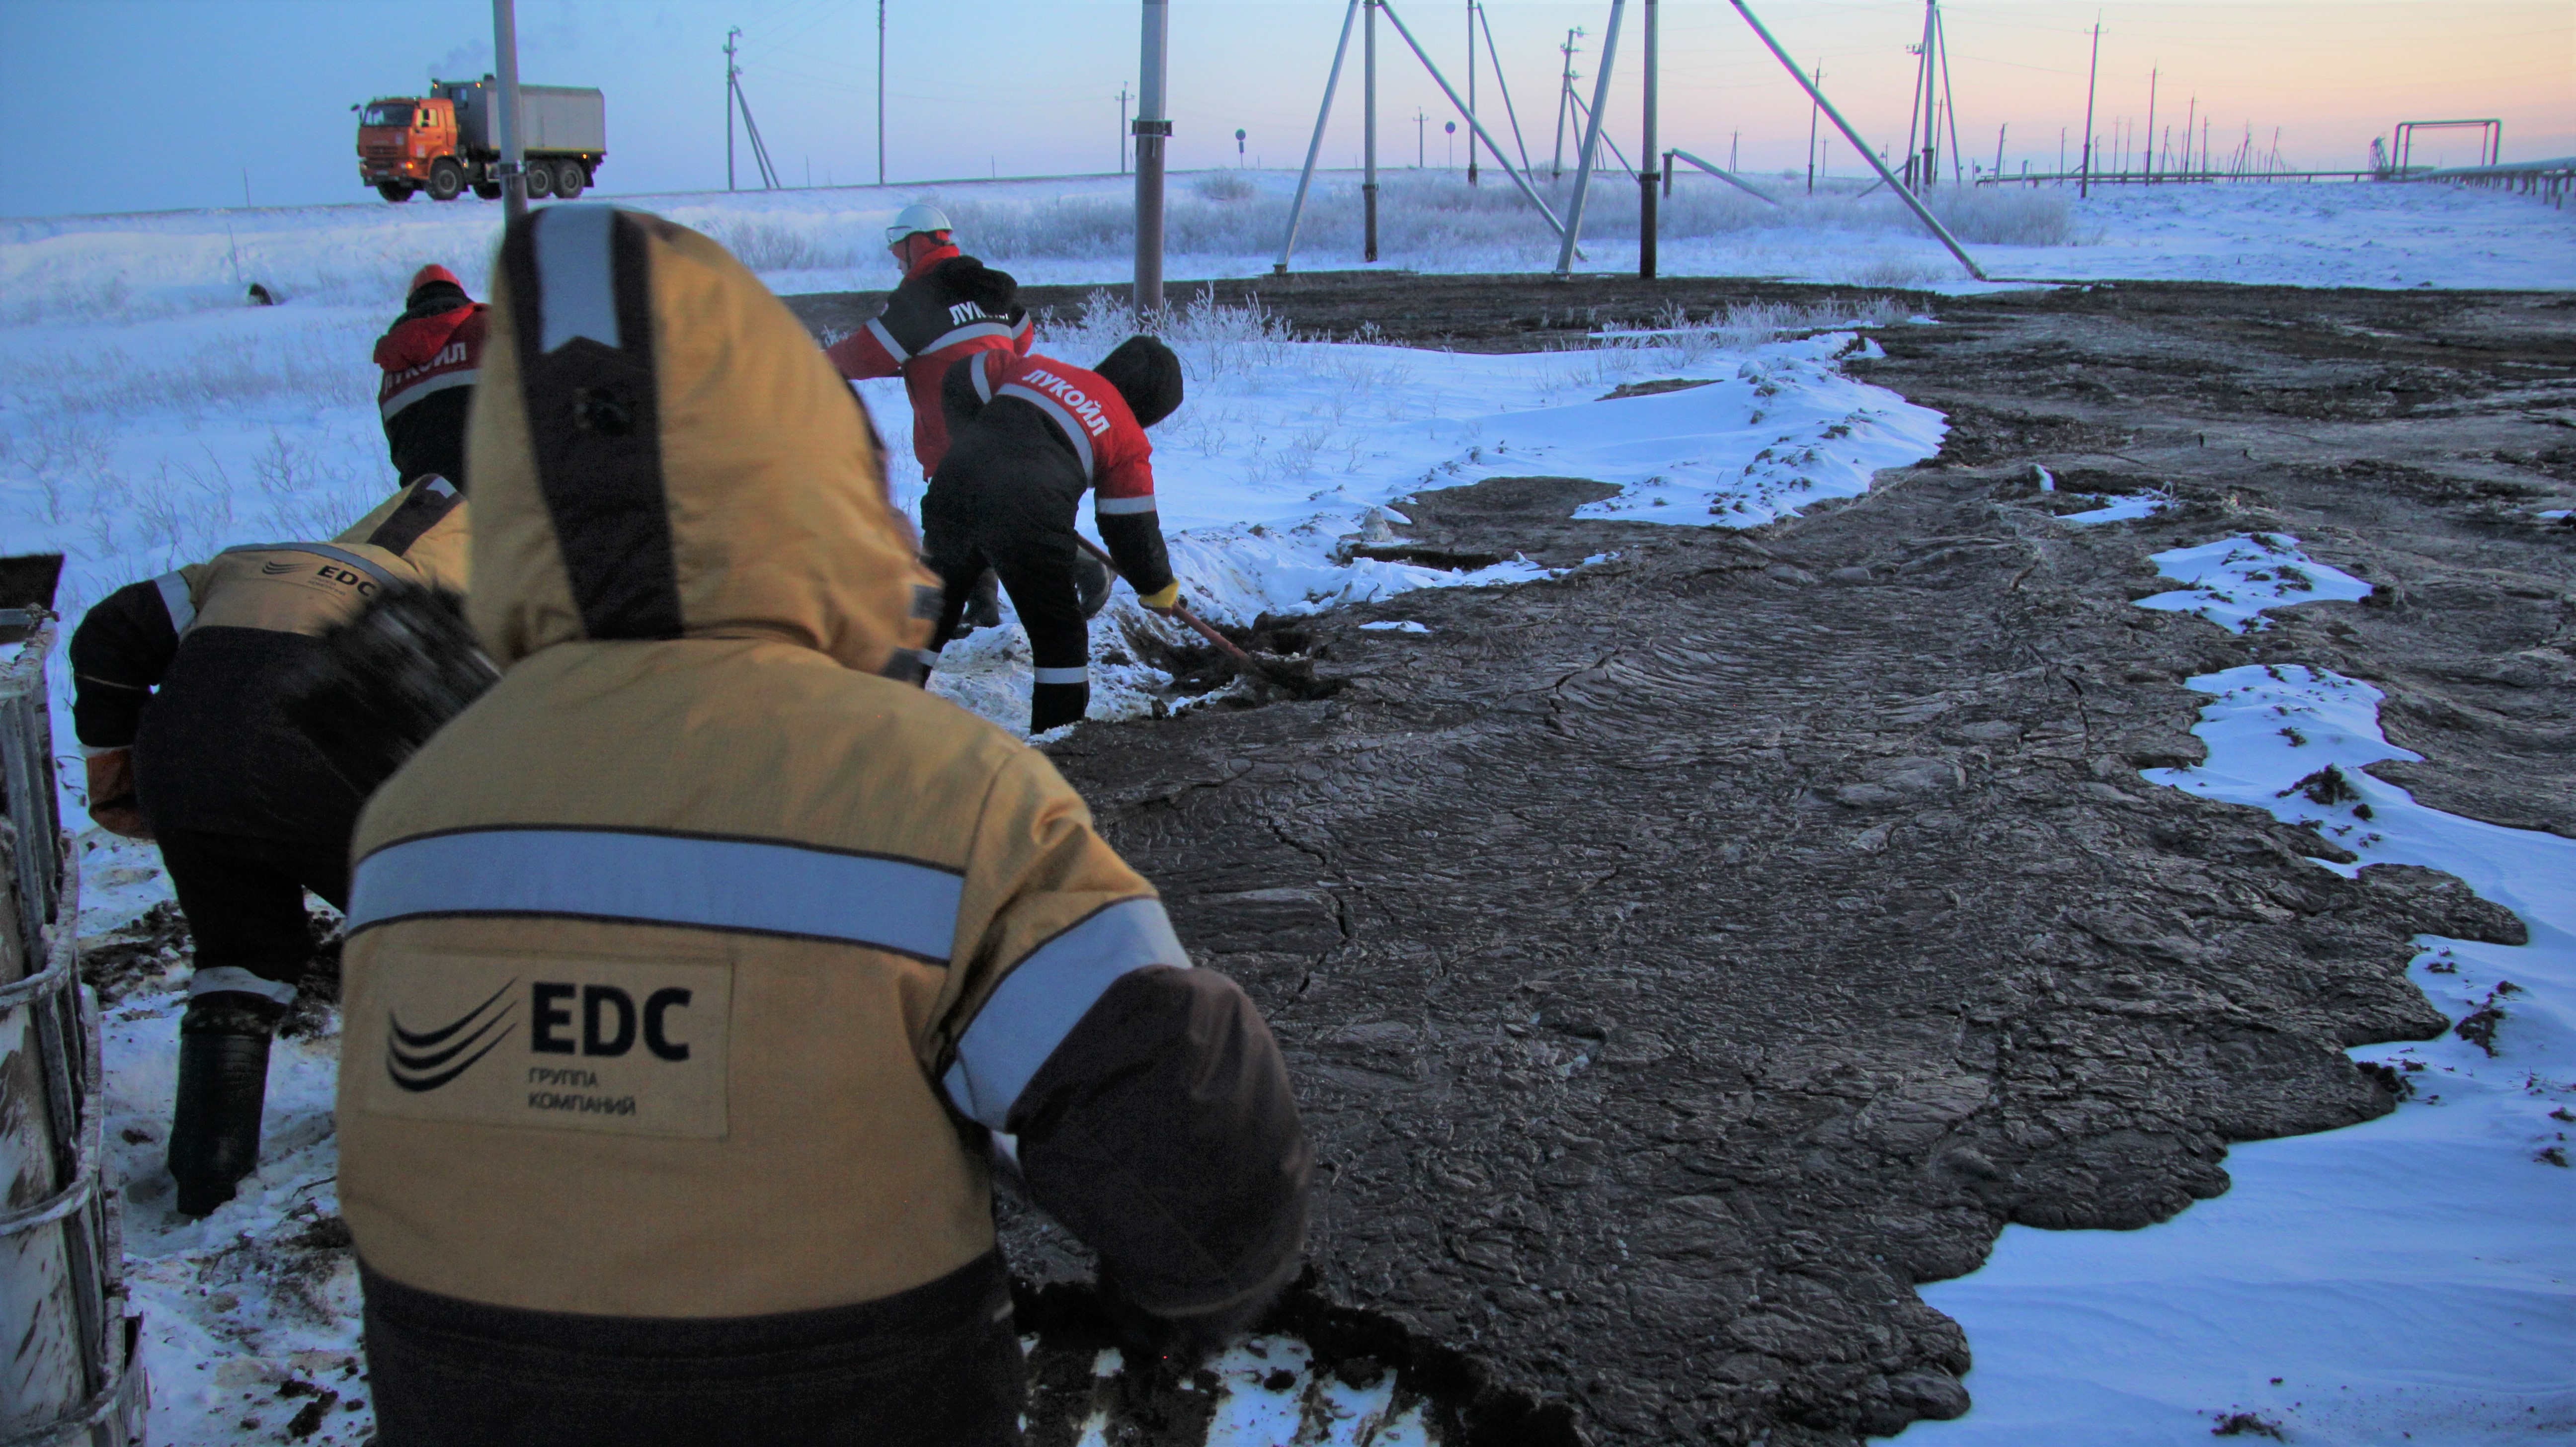 Росприроднадзор утвердил расчет размера вреда, причиненного ТПП «ЛУКОЙЛ-Севернефтегаз» водному объекту, в сумме более 374 млн рублей